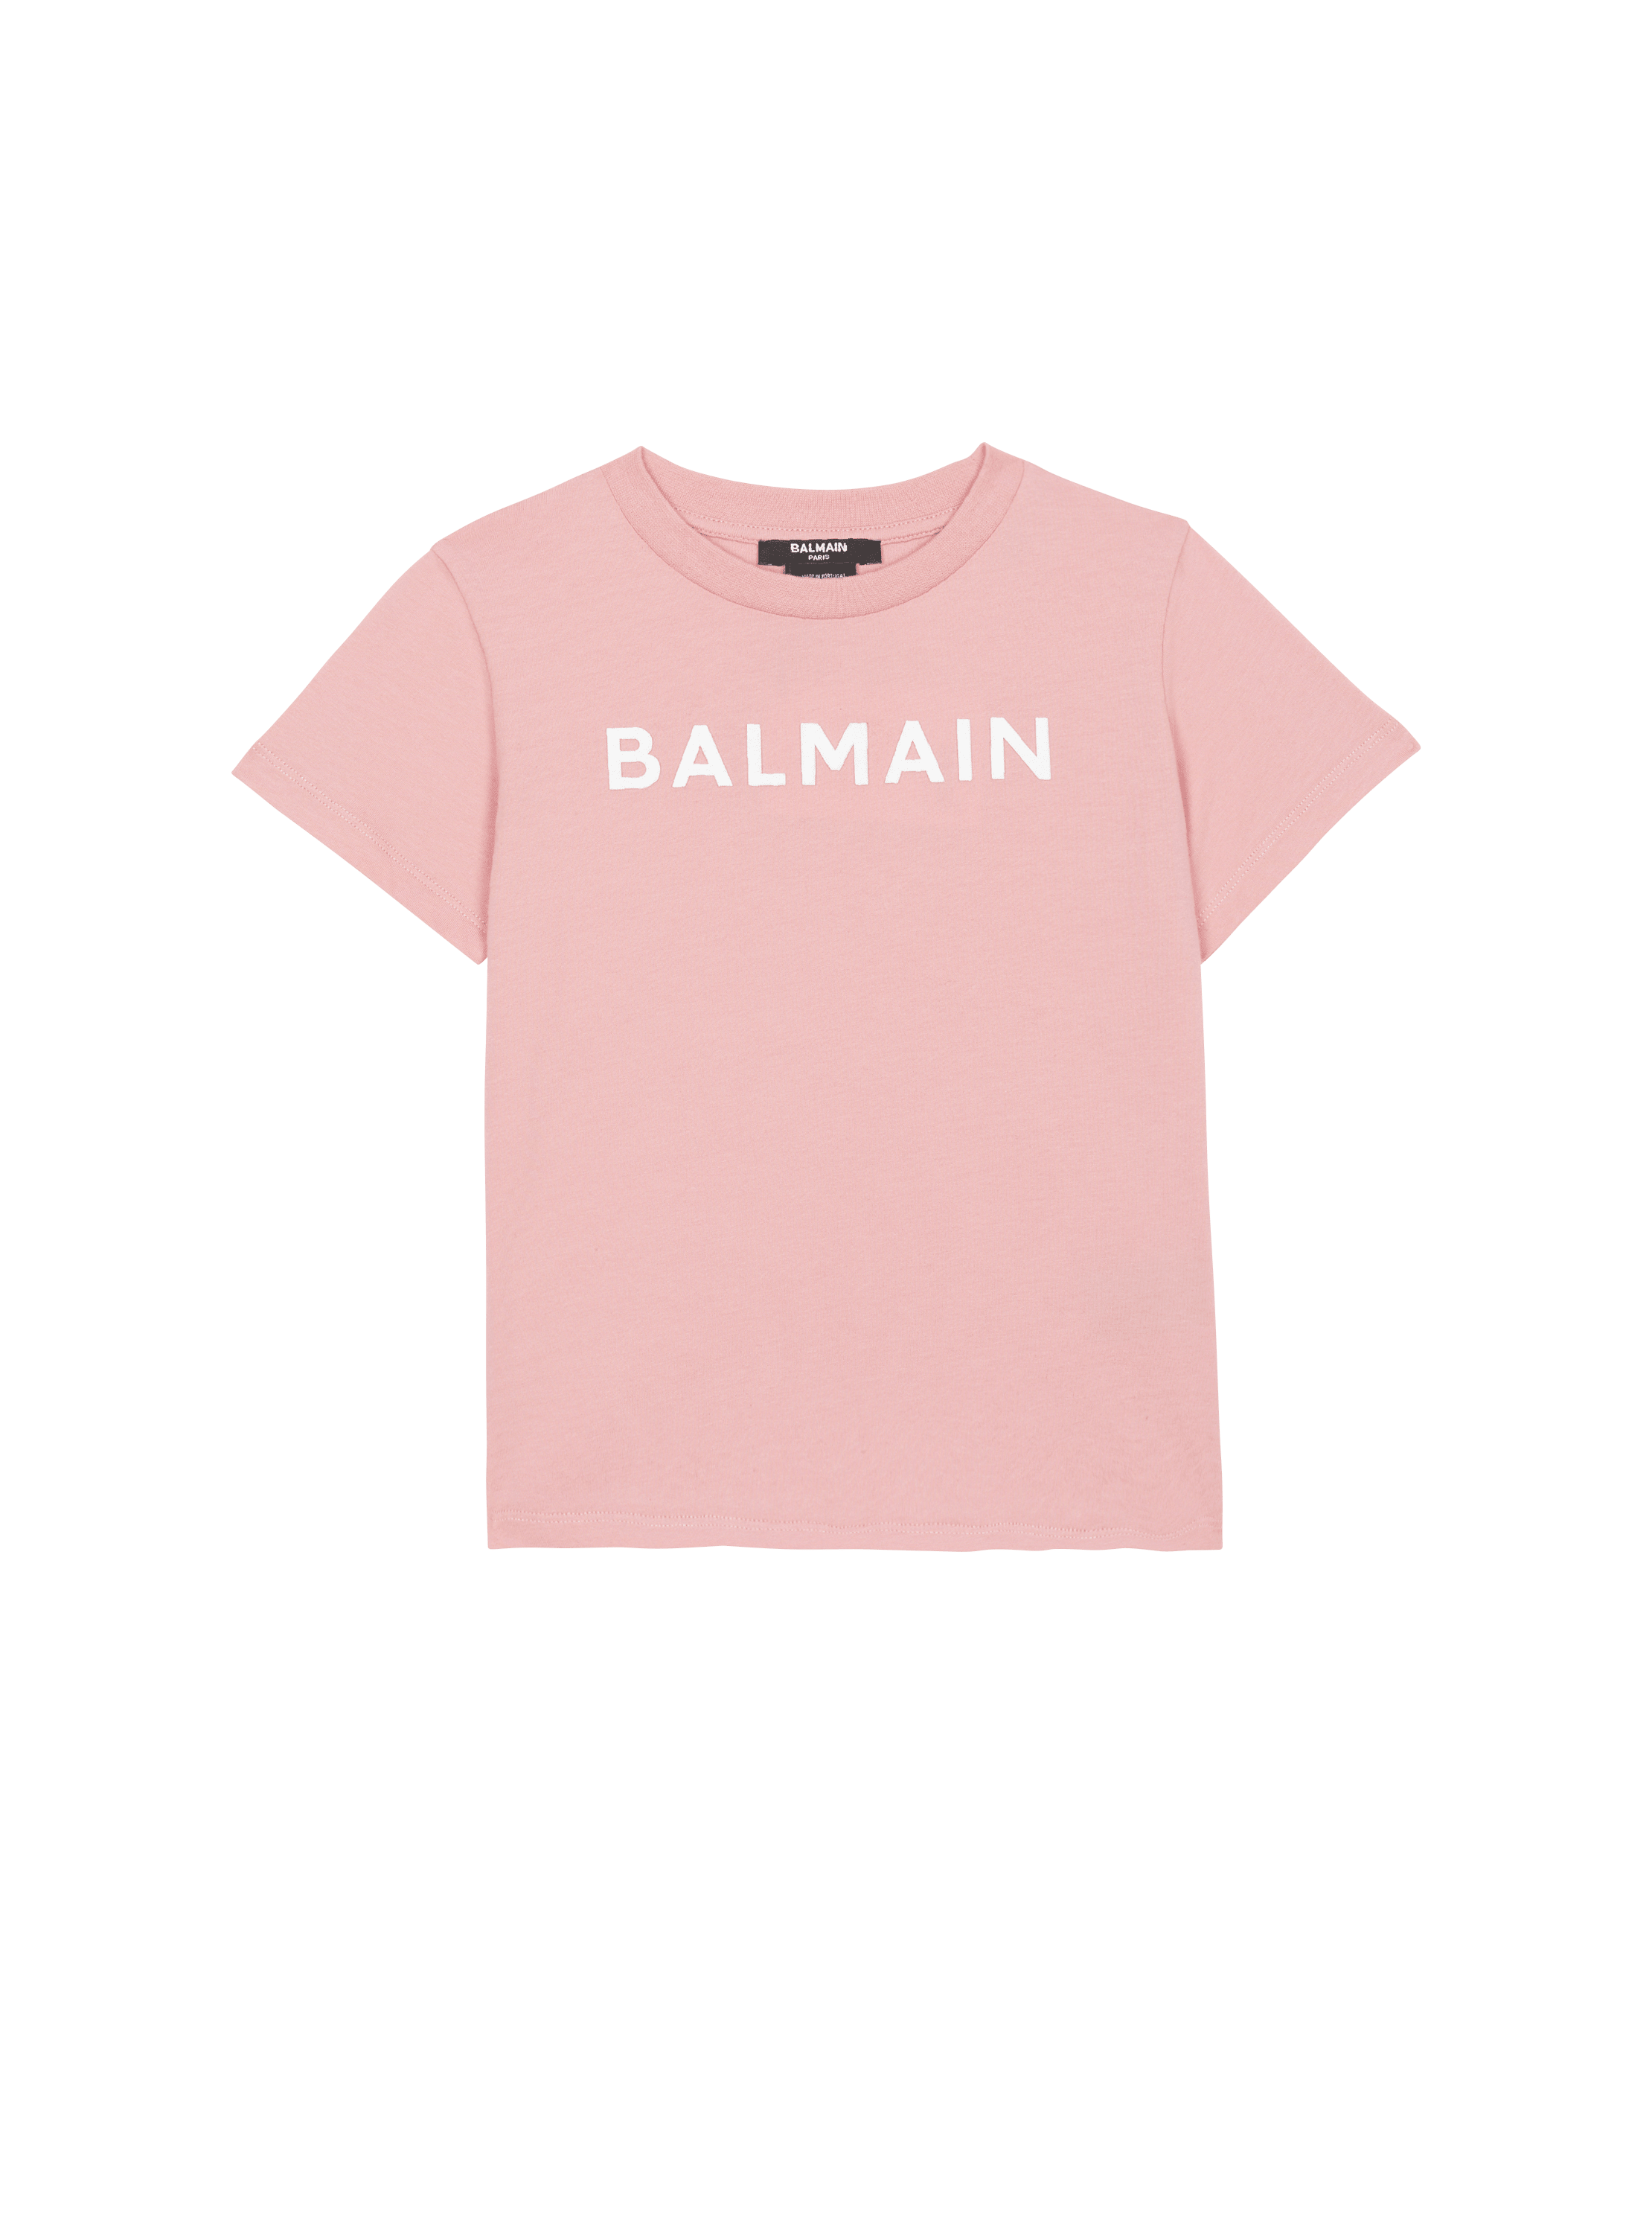 T-Shirt mit Balmain-Logo